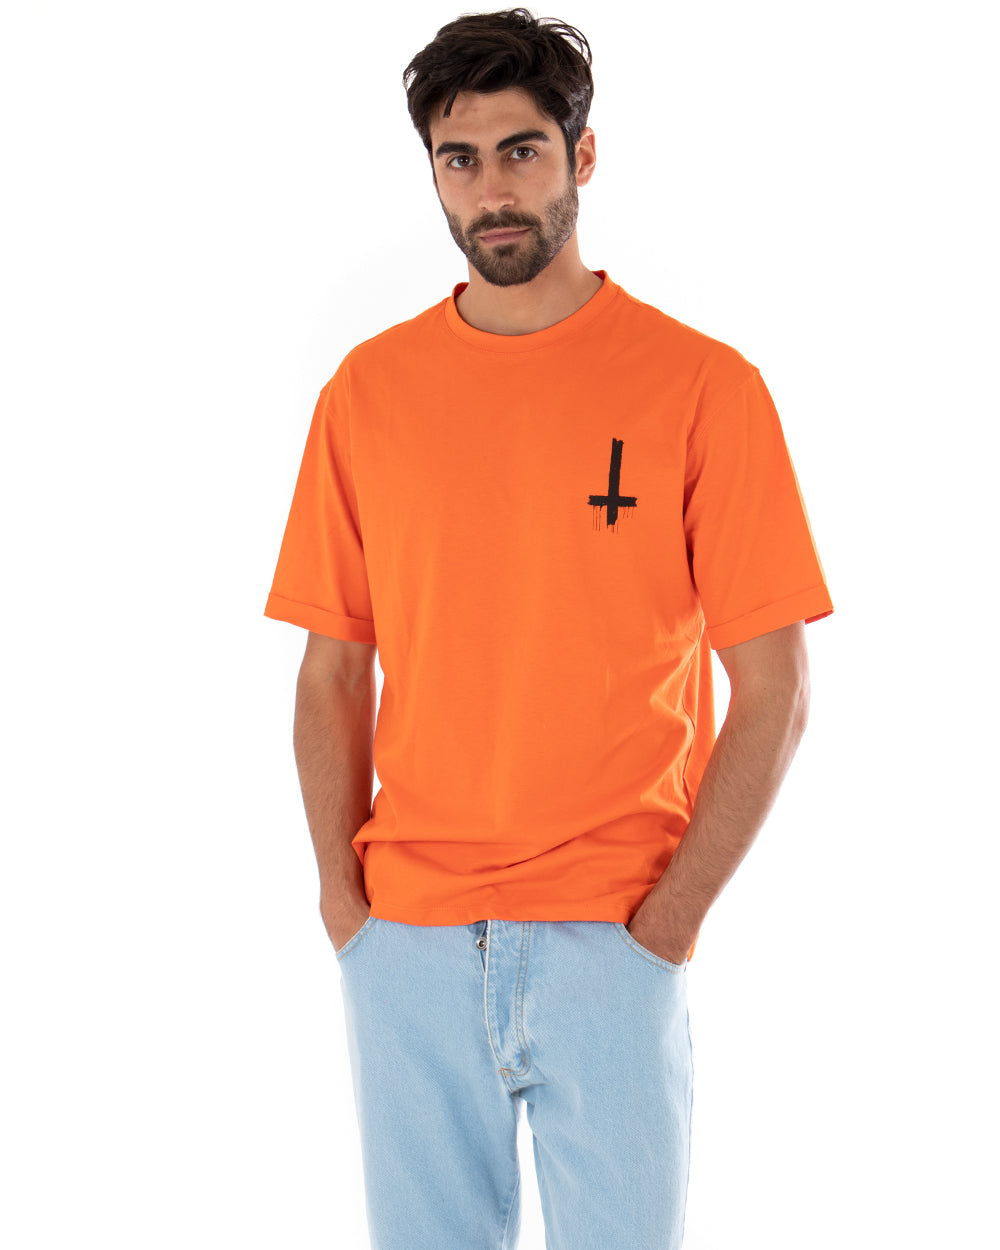 T-shirt Uomo Maniche Corte Stampa Tinta Unita Arancione Cotone Casual GIOSAL